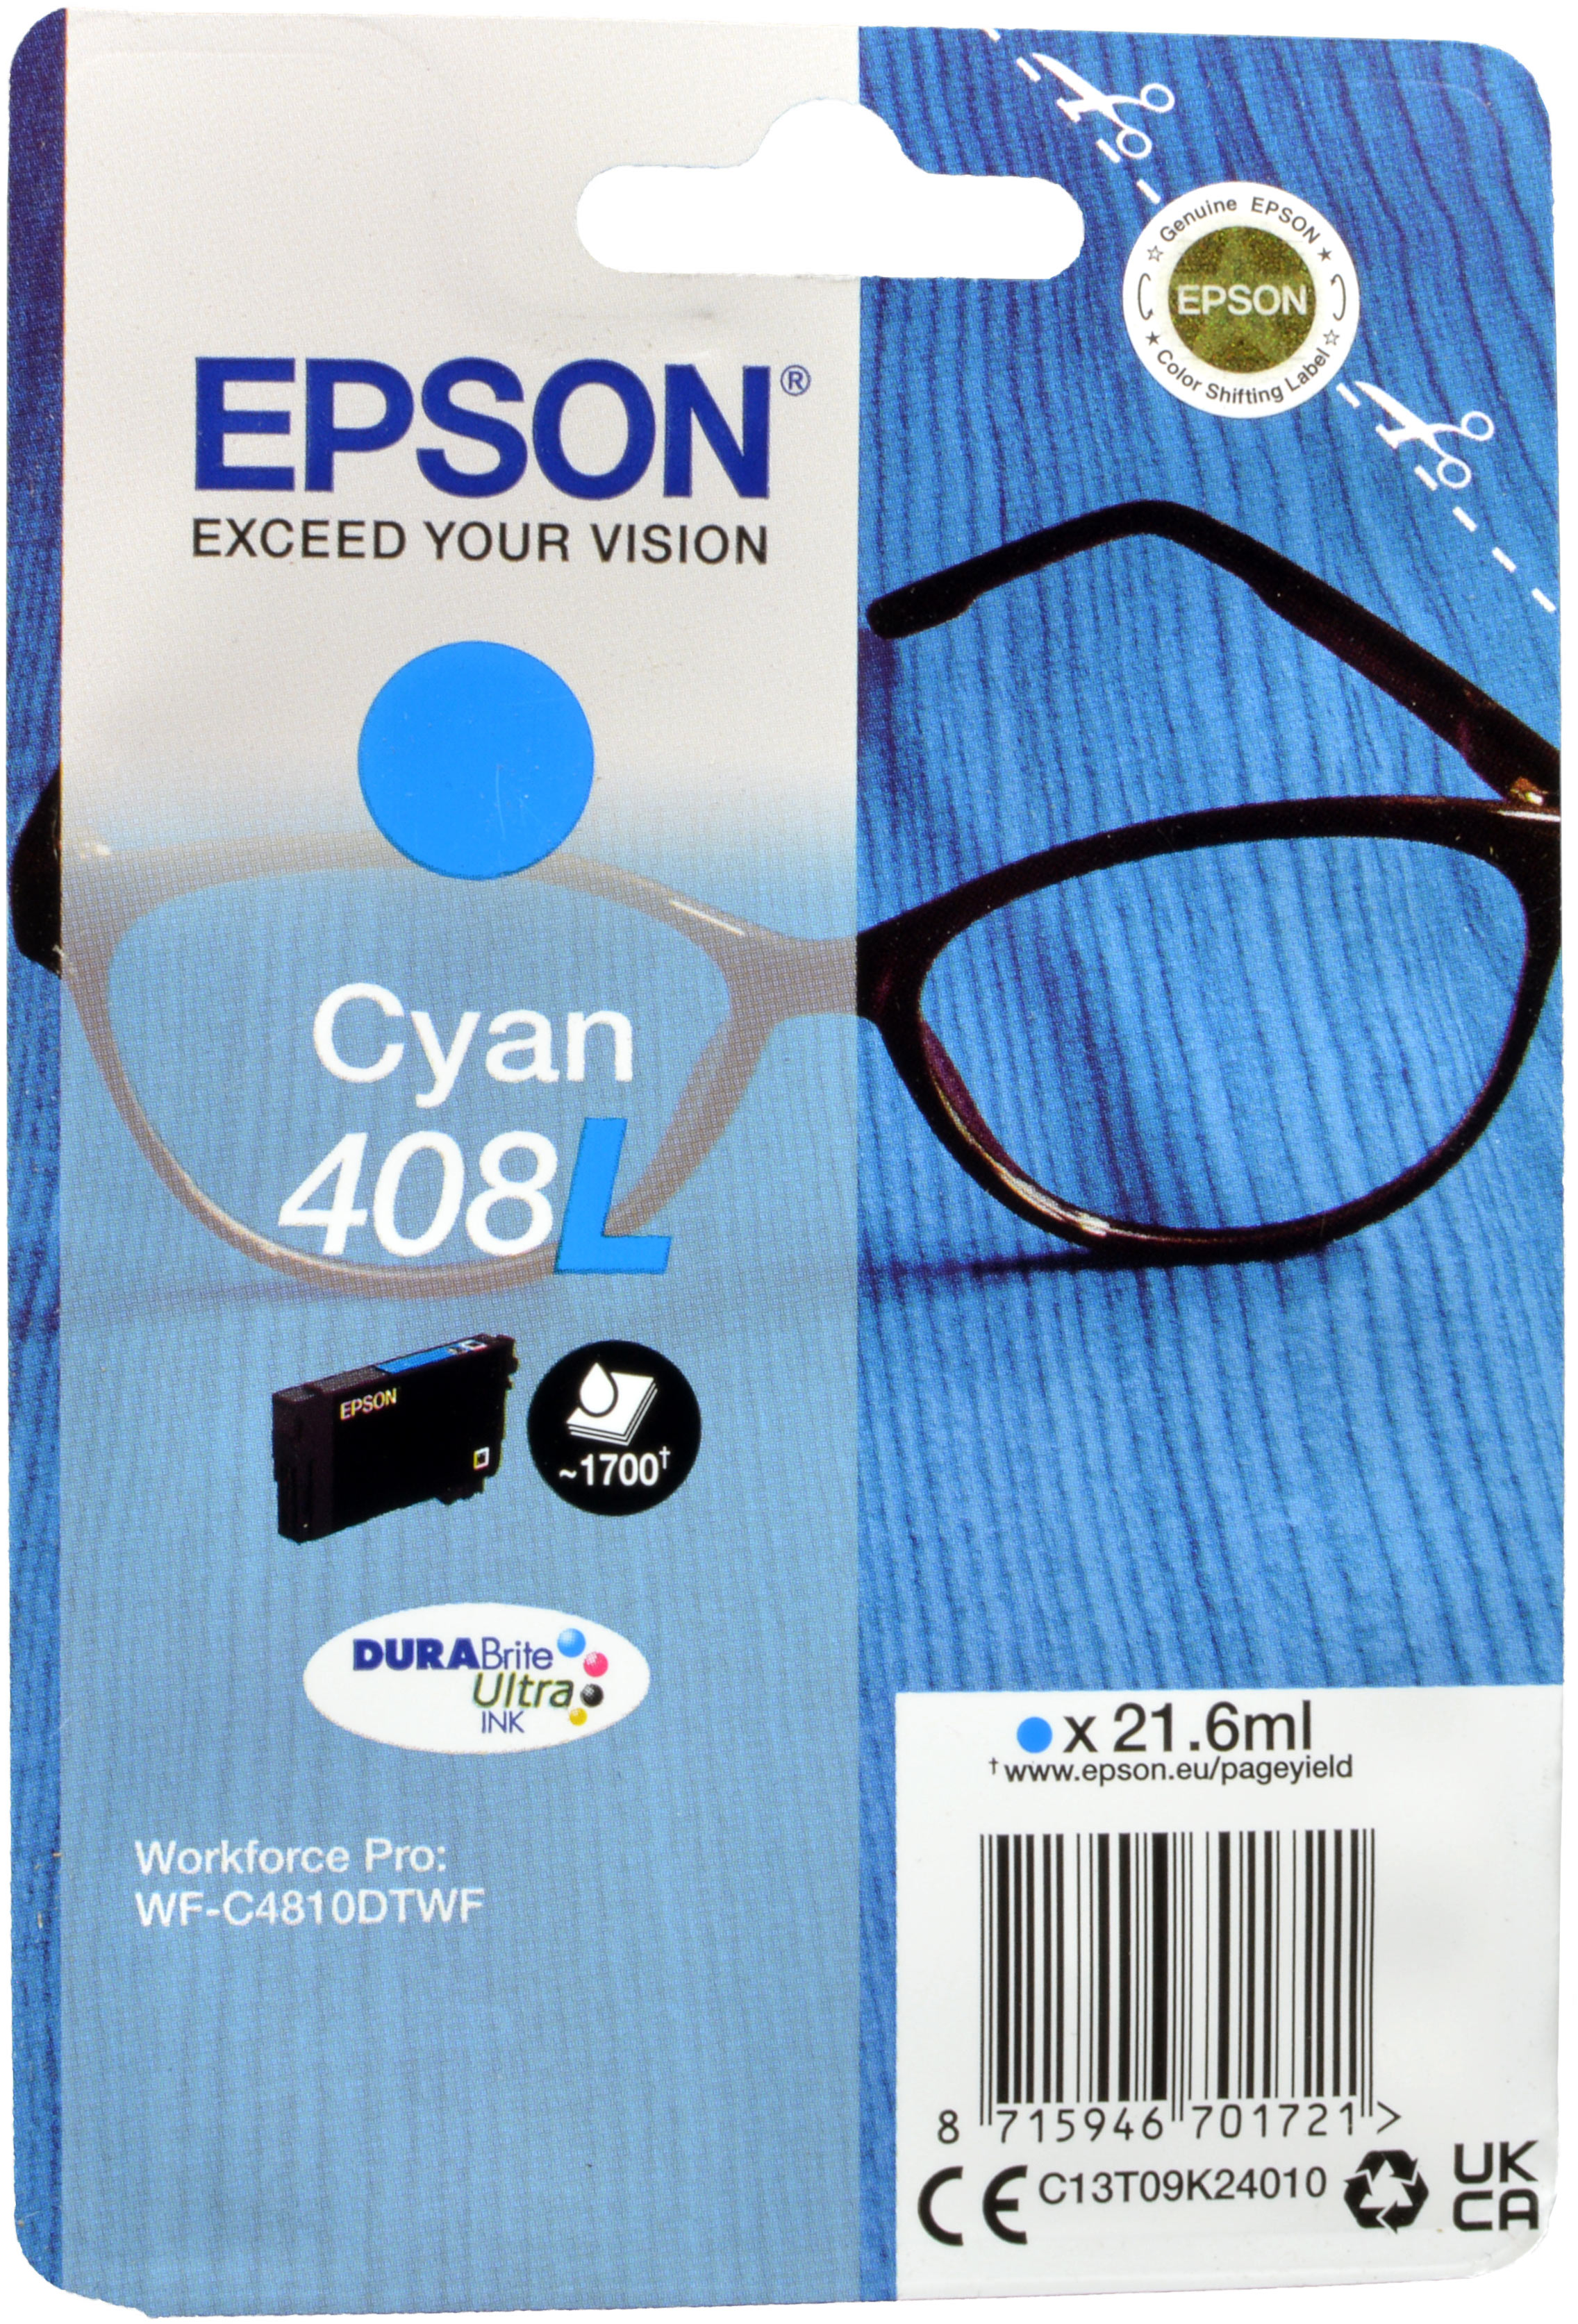 Epson Tinte C13T09K24010  Cyan 408L  cyan